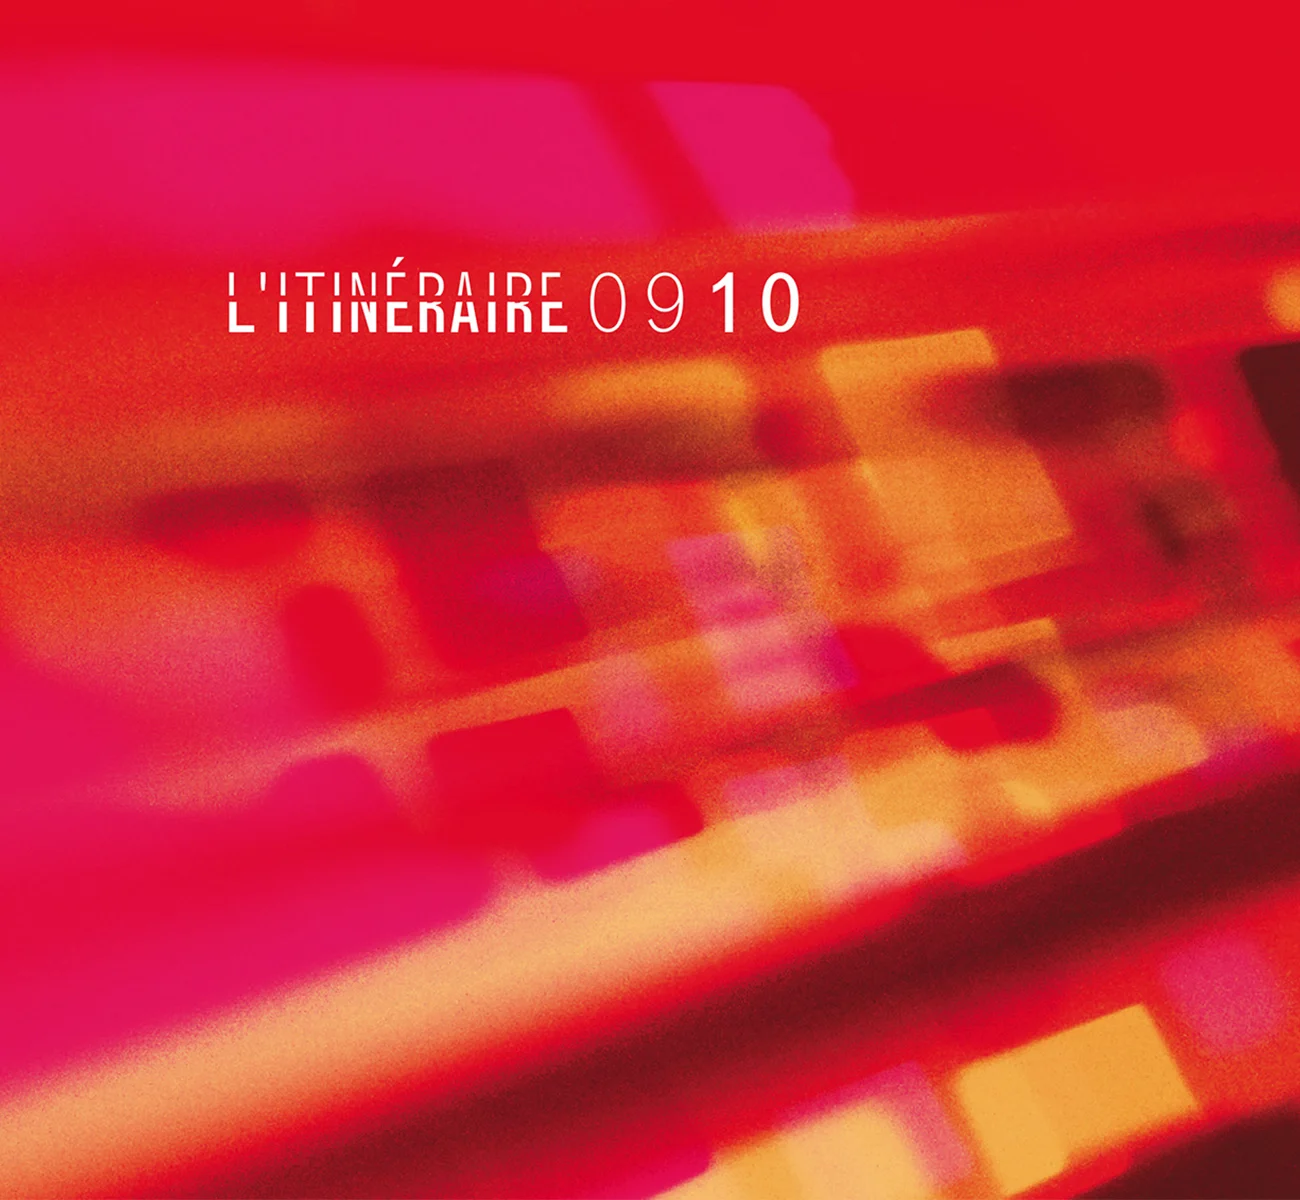 Image de couverture du projet L'Itinéraire 2009 2010 de l'ensemble musical L'Itinéraire de la page portfolio